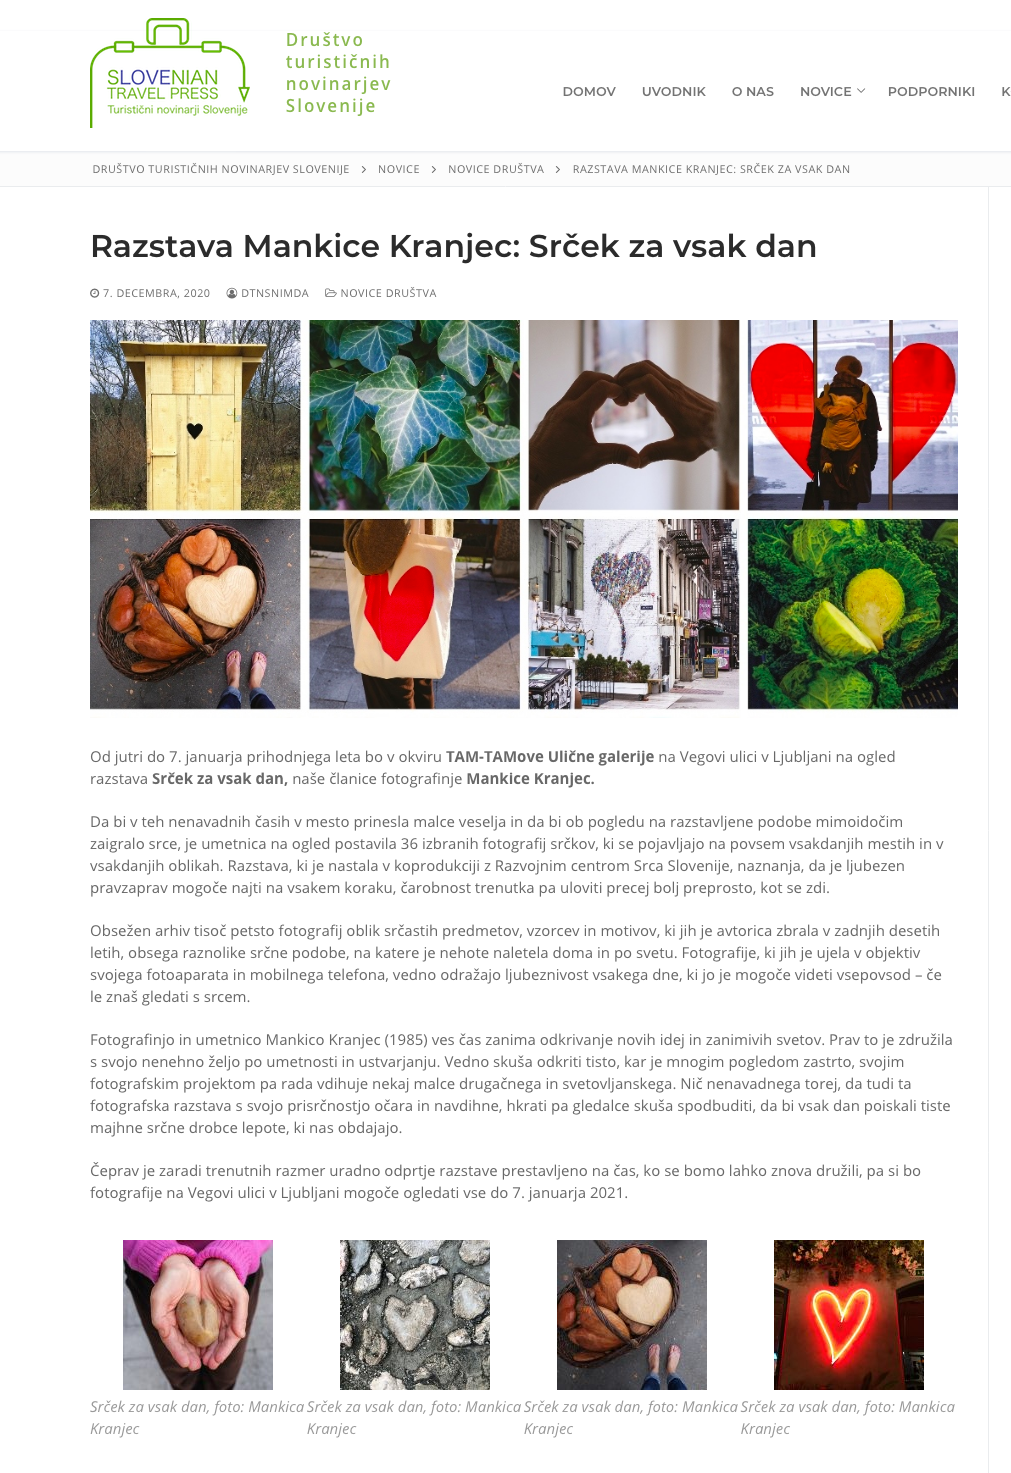 Screenshot_2021-01-25 Razstava Mankice Kranjec Srček za vsak dan – Društvo turističnih novinarjev Slovenije.png